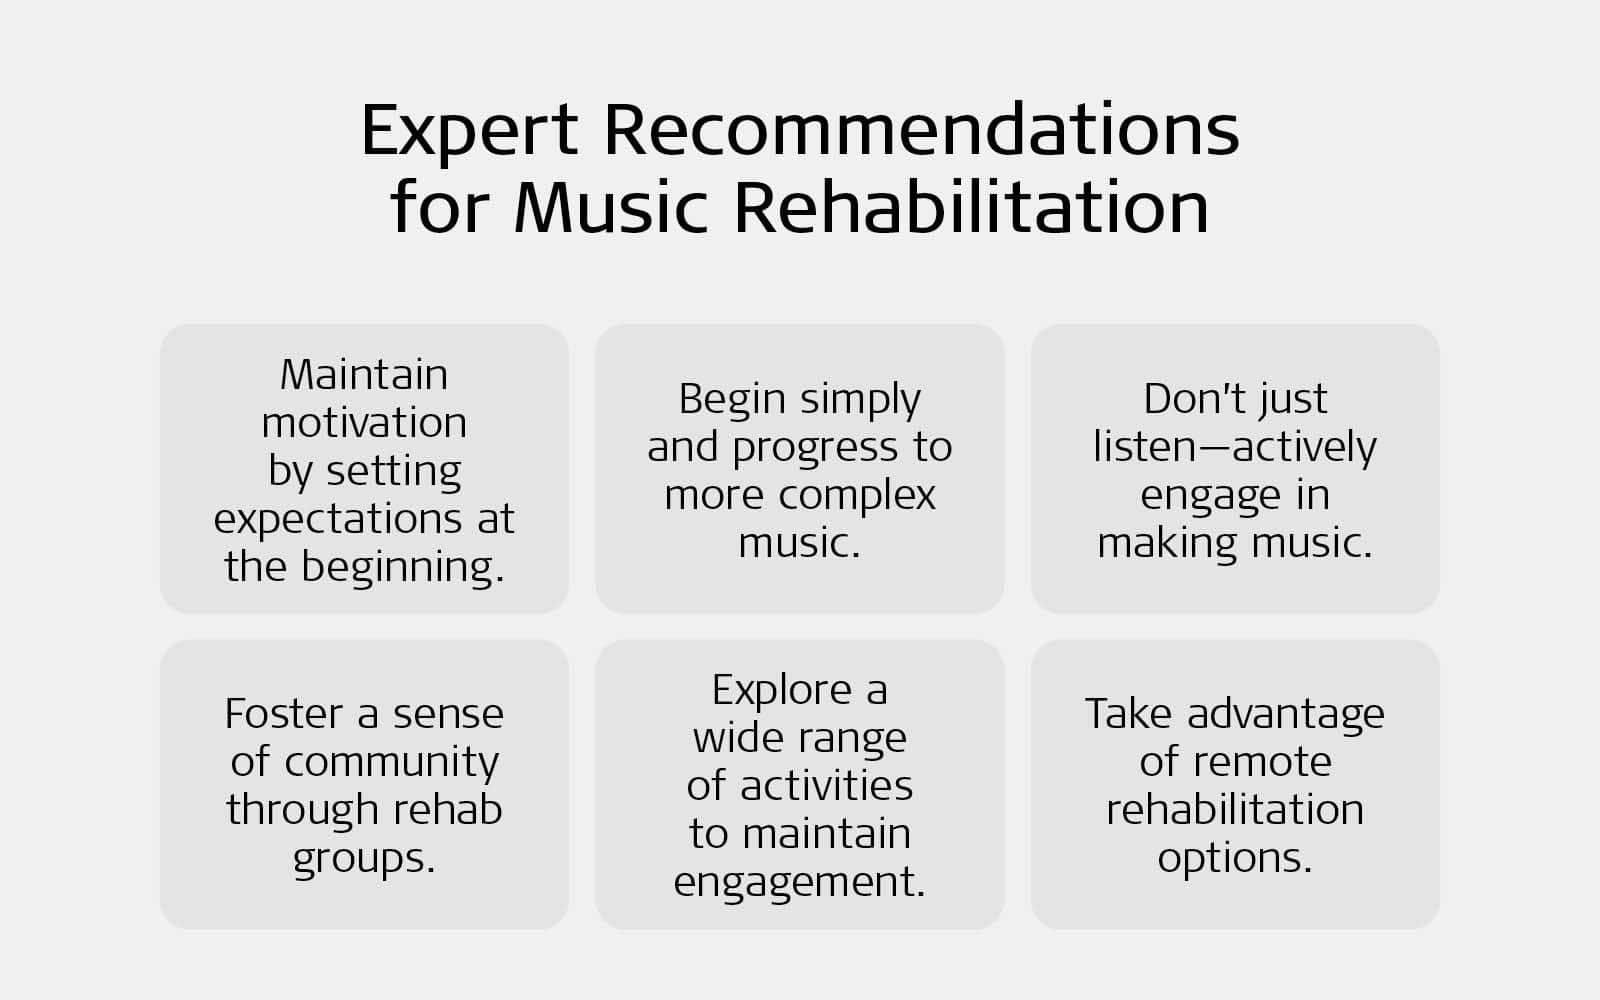 Tips for music rehabilitation